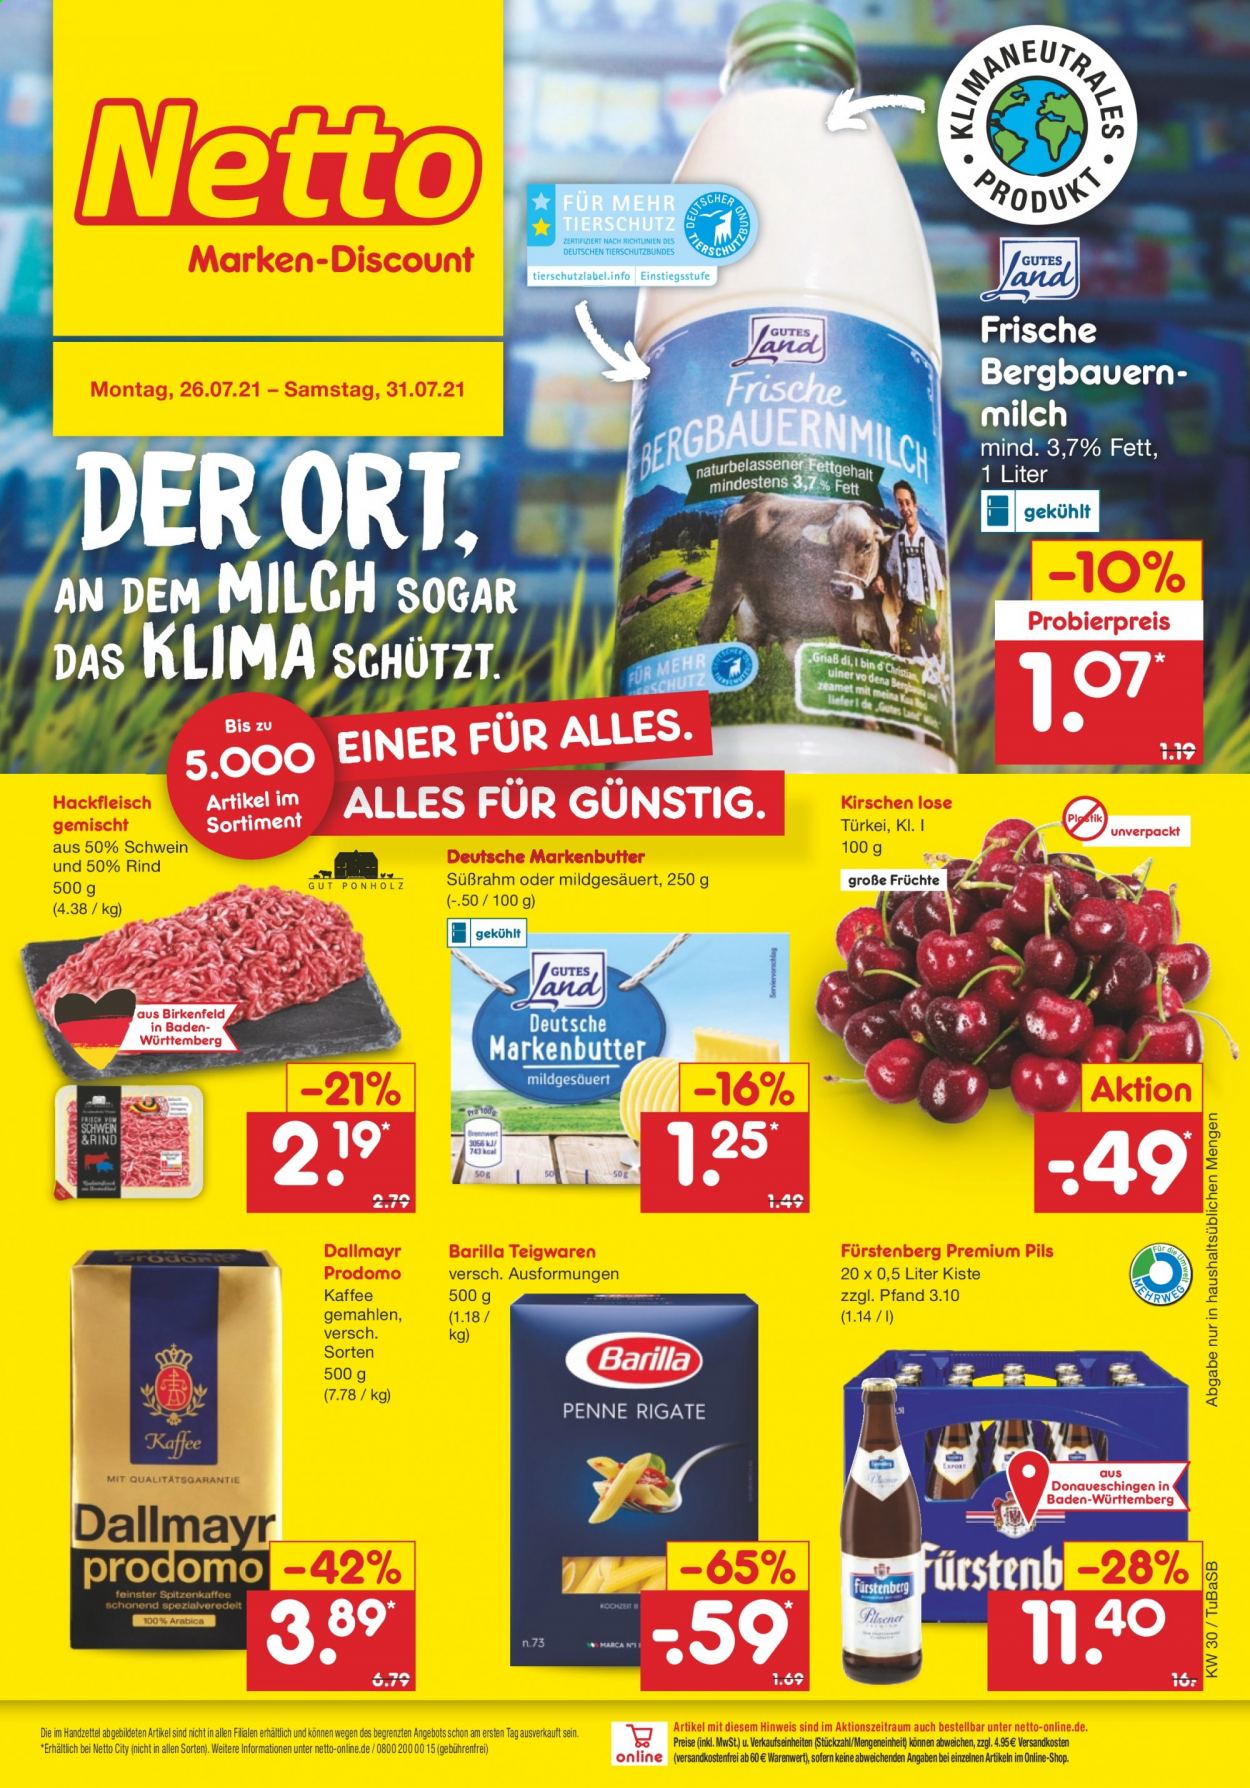 thumbnail - Prospekte Netto Marken-Discount - 26.07.2021 - 31.07.2021 - Produkte in Aktion - Bier, Rindfleisch, Hackfleisch, Schweinehackfleisch, Kirschen, Milch, Butter, Barilla, Teigwaren, Kaffee, Dallmayr  Prodomo, Dallmayr. Seite 1.